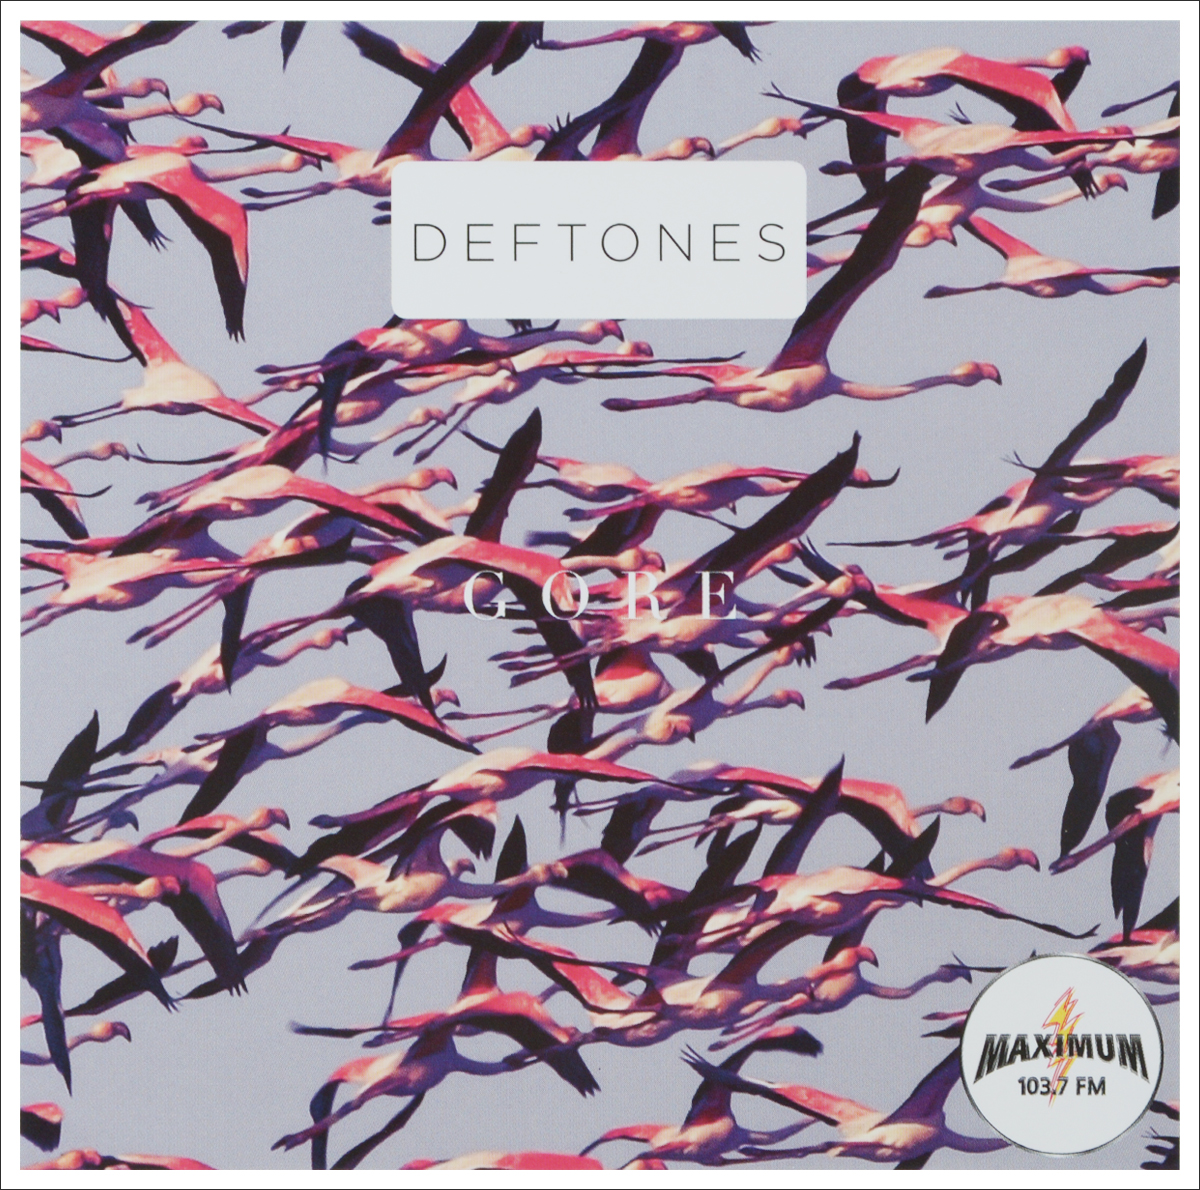 Deftones around the. Deftones обложка. Группа Deftones альбомы. Deftones. Gore. Deftones обложки альбомов.